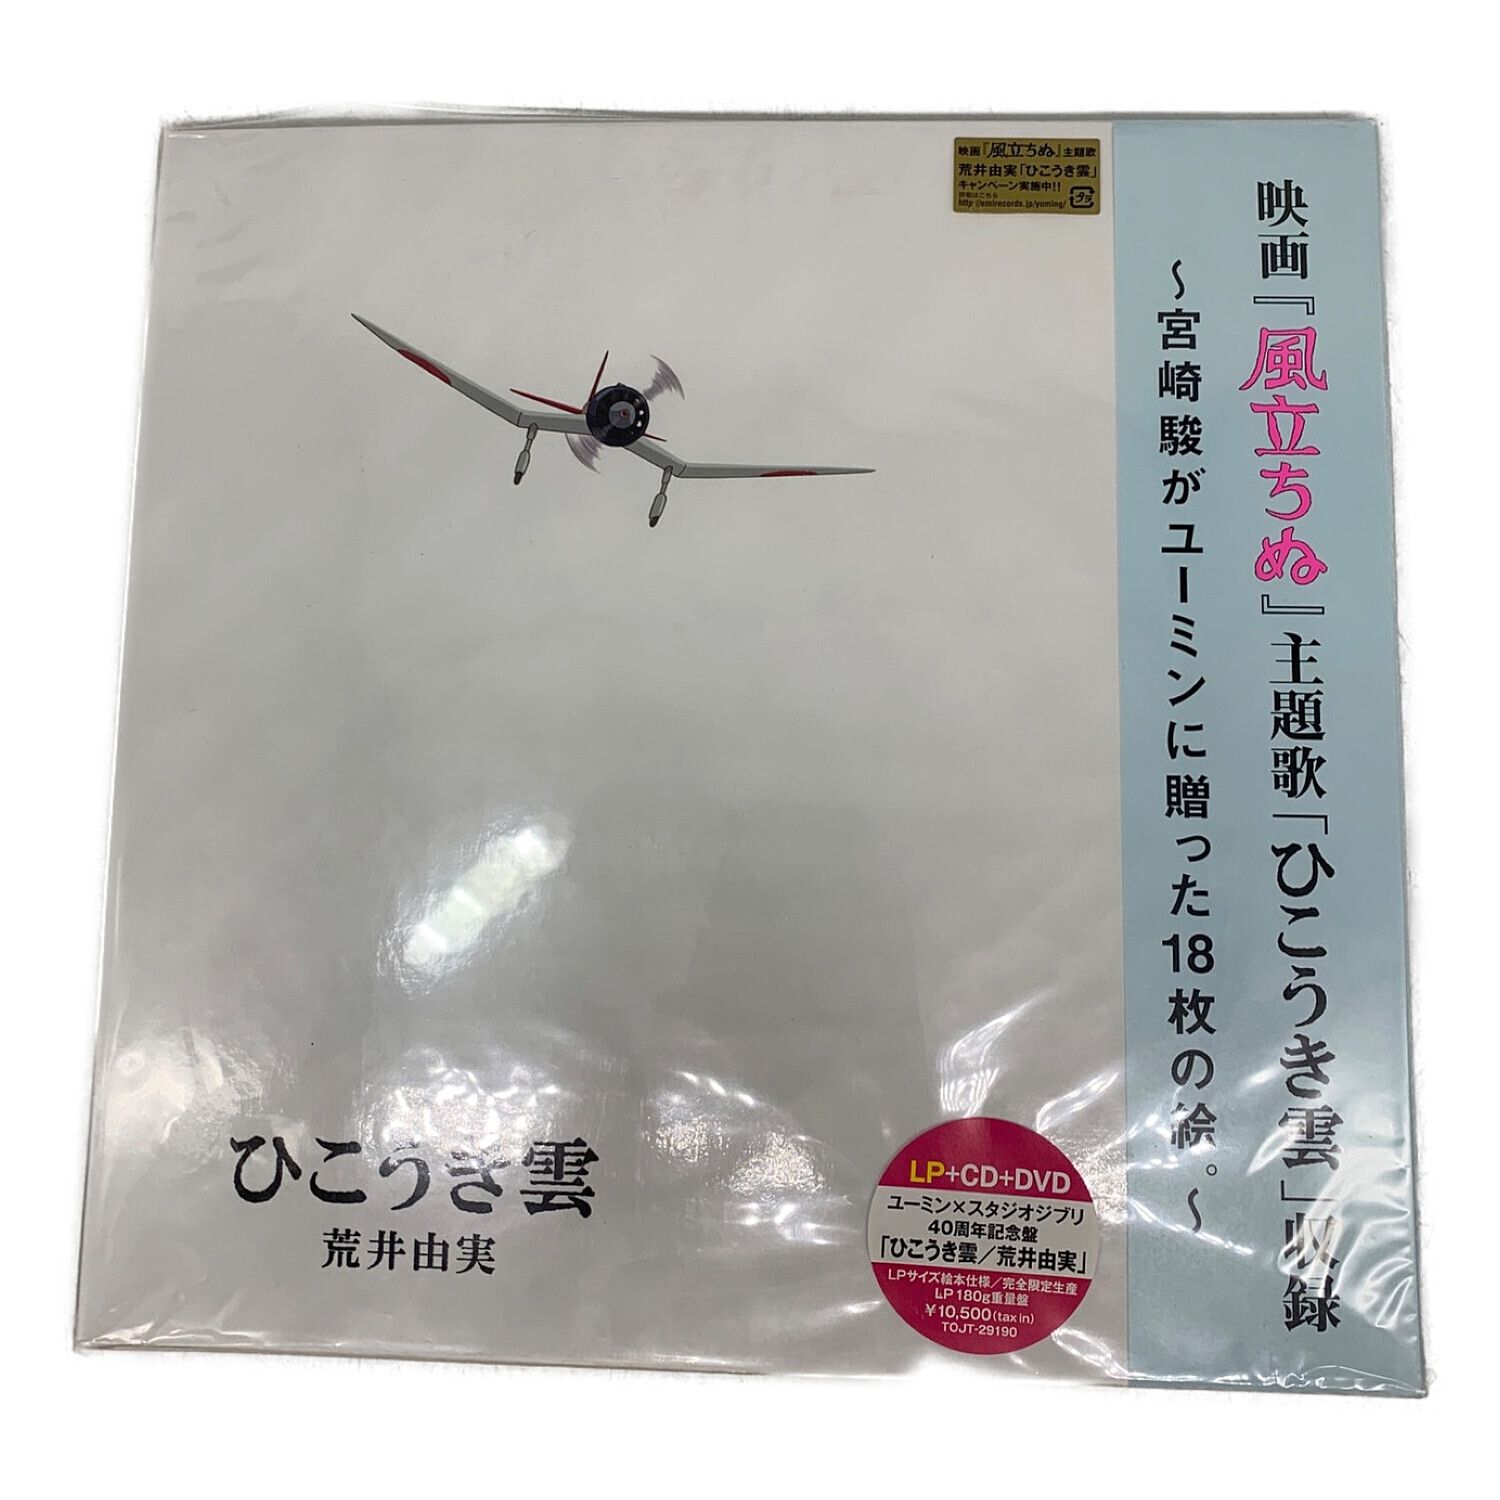 荒井由実 LP+CD+DVD ユーミン×スタジオジブリ ひこうき雲 40周年 